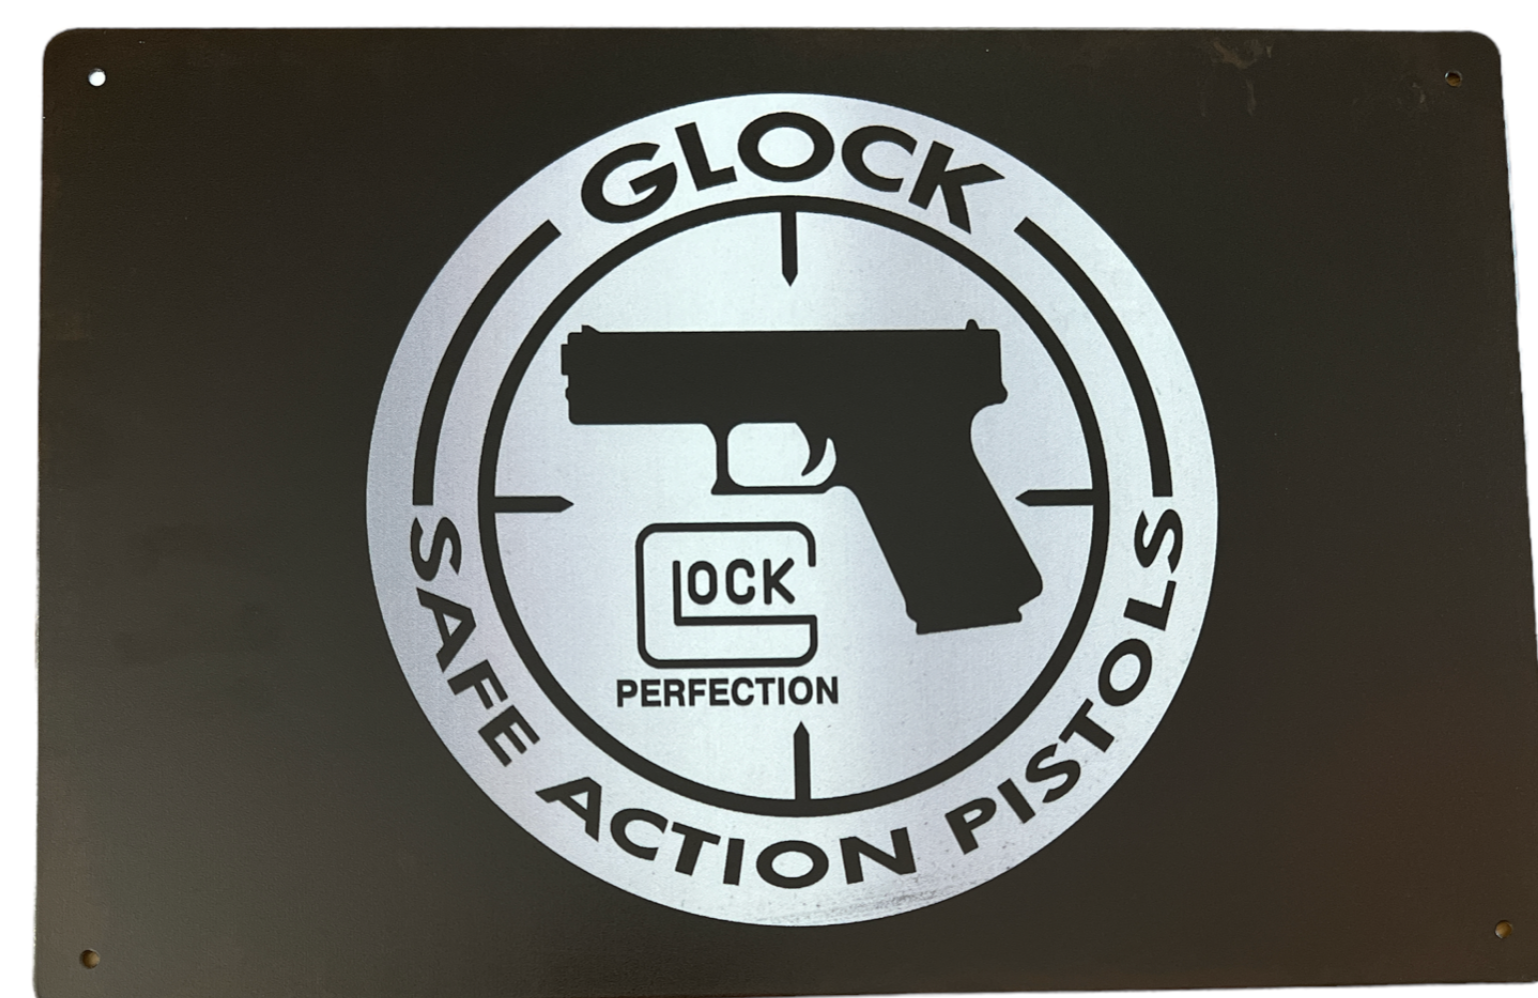 Glock - Metal tin sign